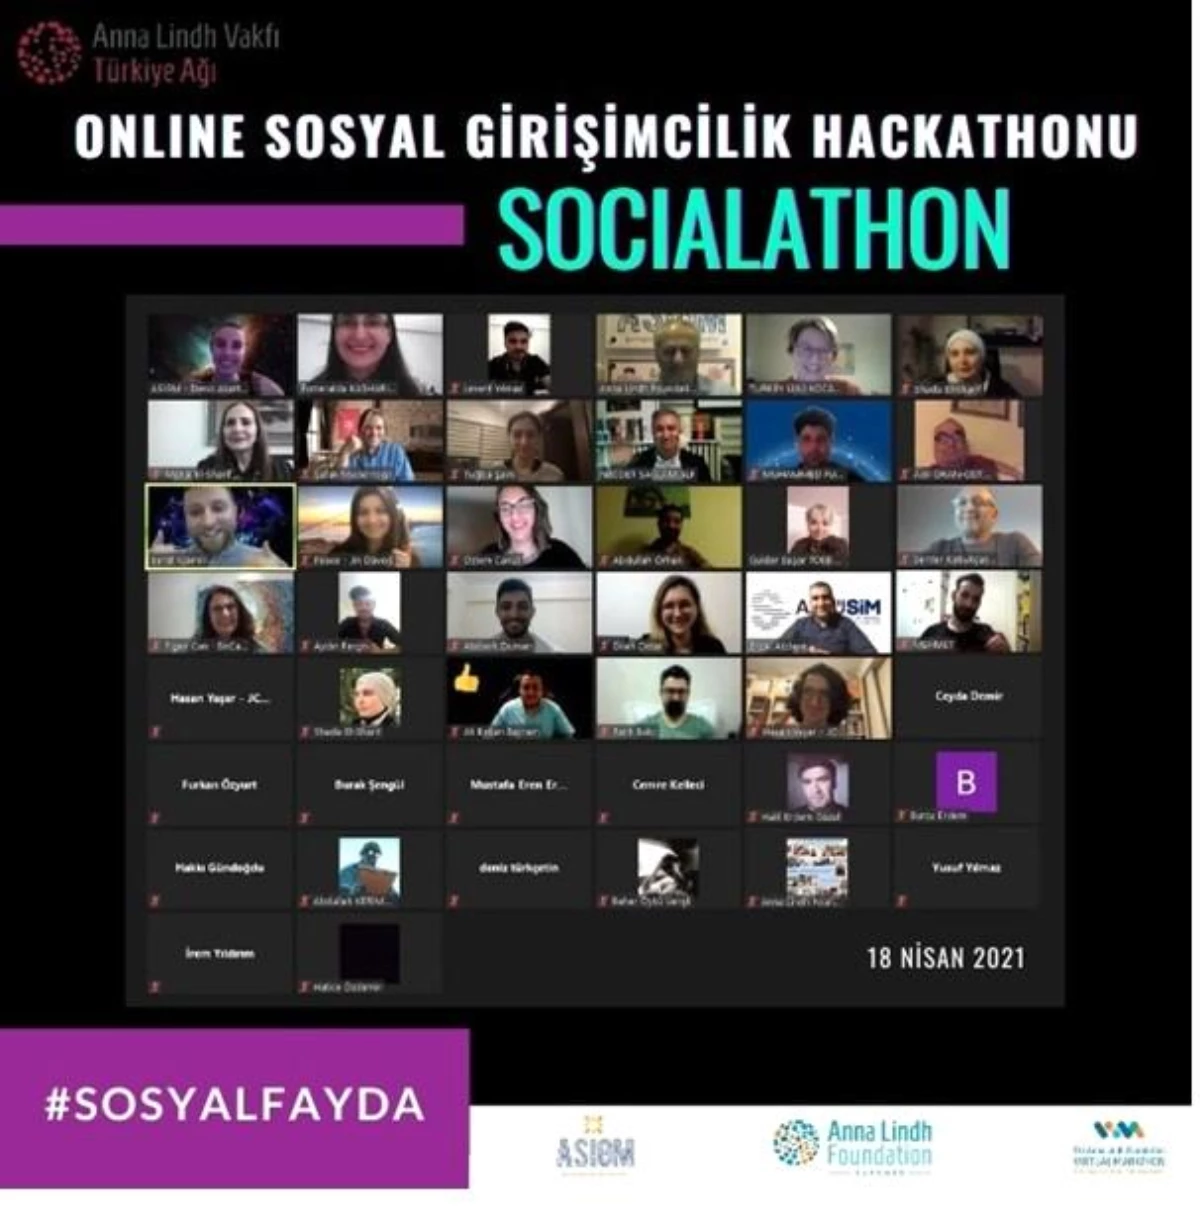 Gençlere yönelik \'Sosyal Girişimcilik Hackathonu\' düzenlendi